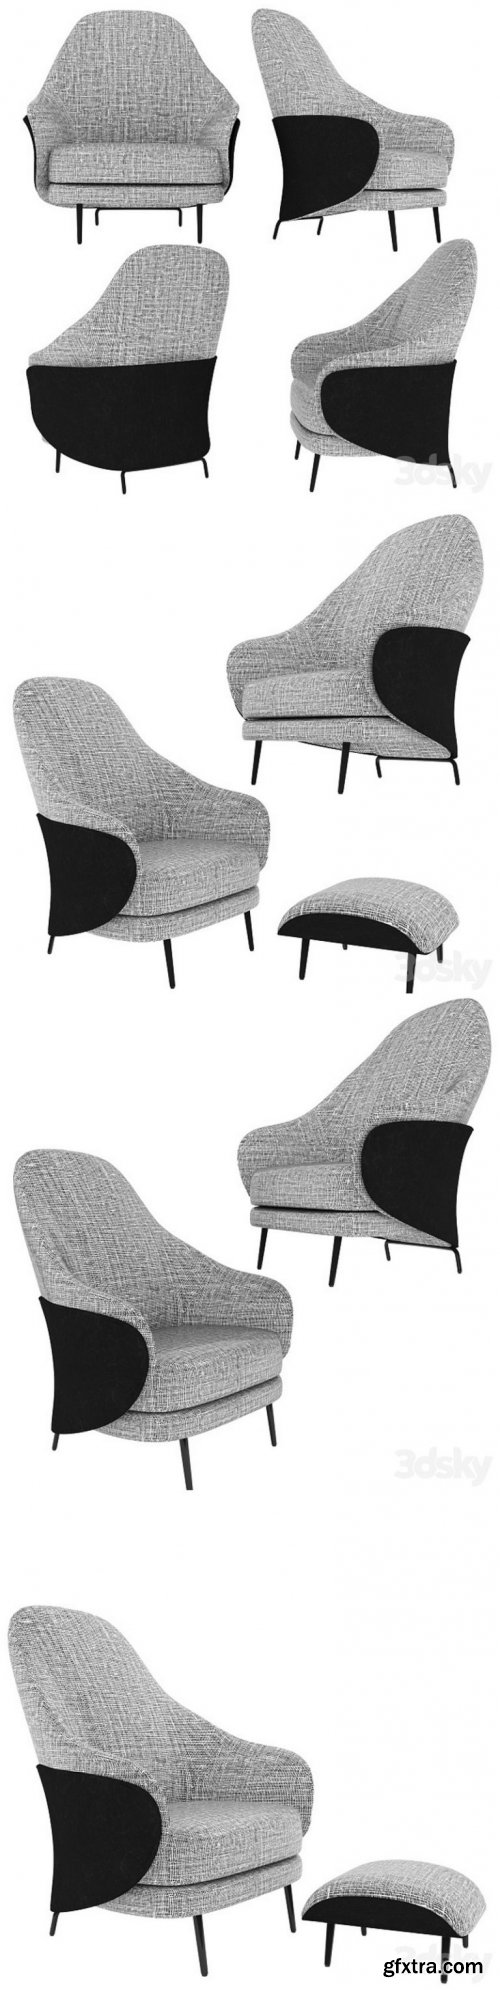 Minotti Angie GamFratesi design armchair